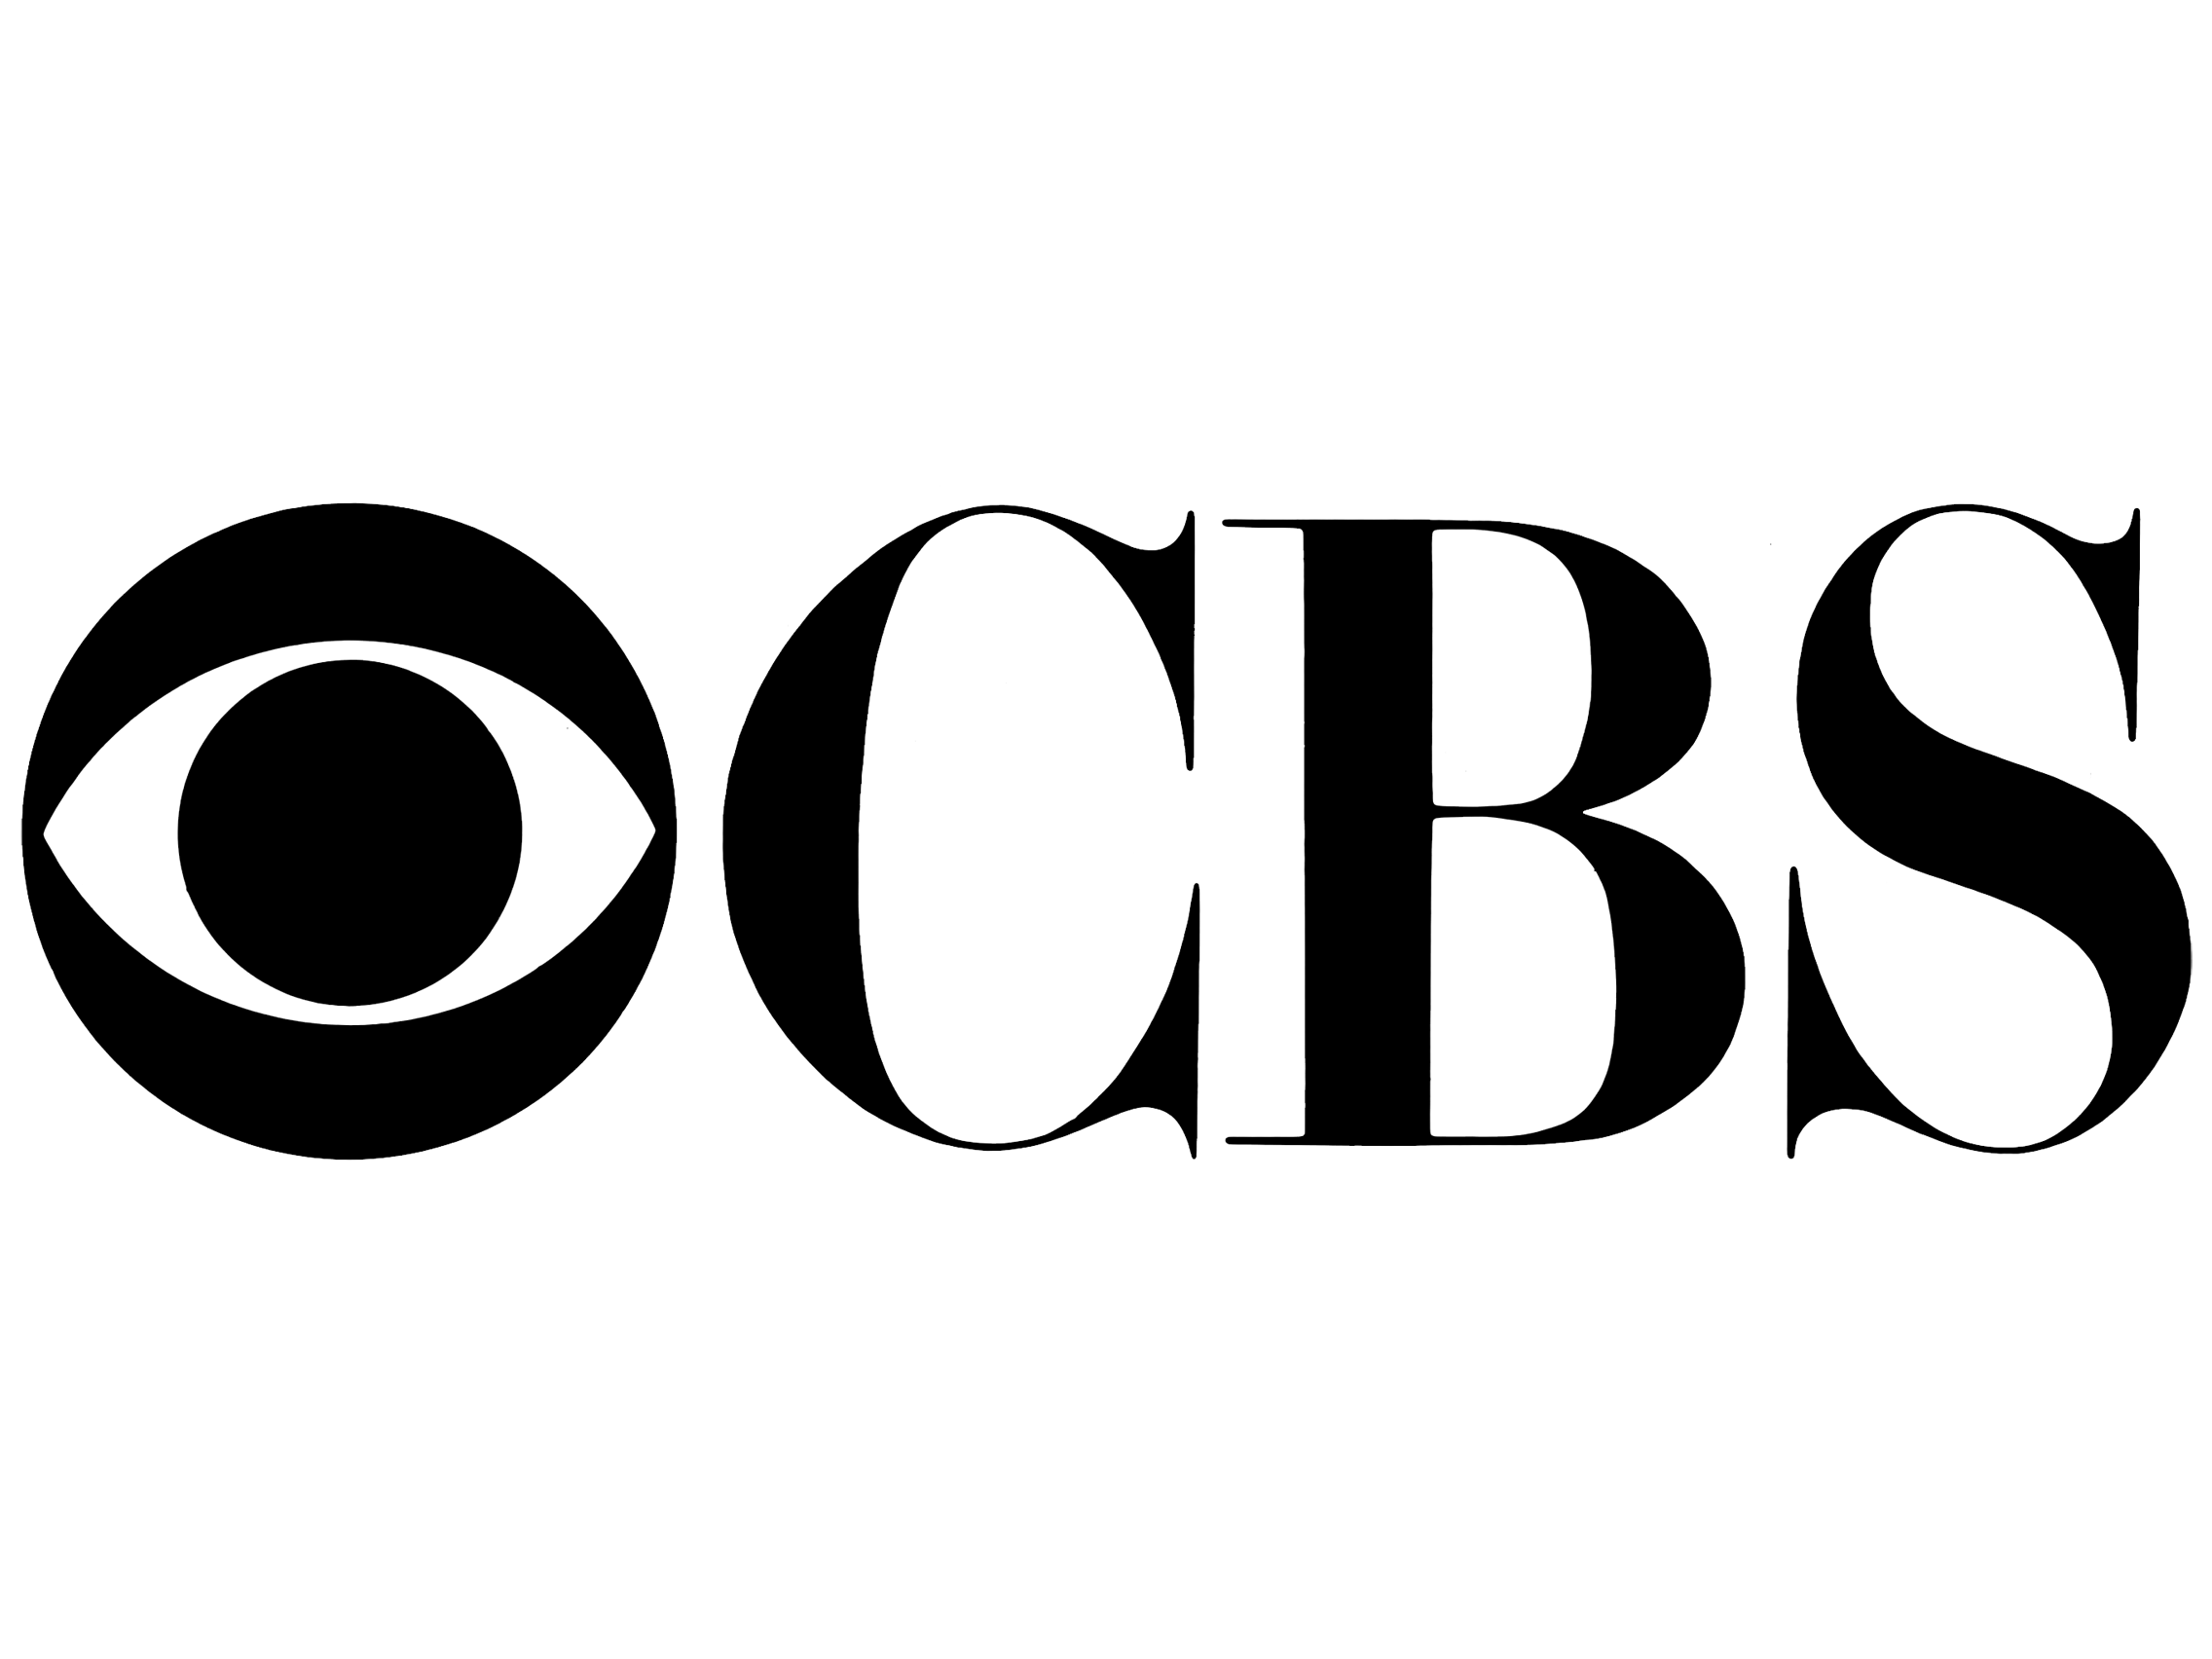 Small CBS Logo - Cbs Logo Small | www.topsimages.com